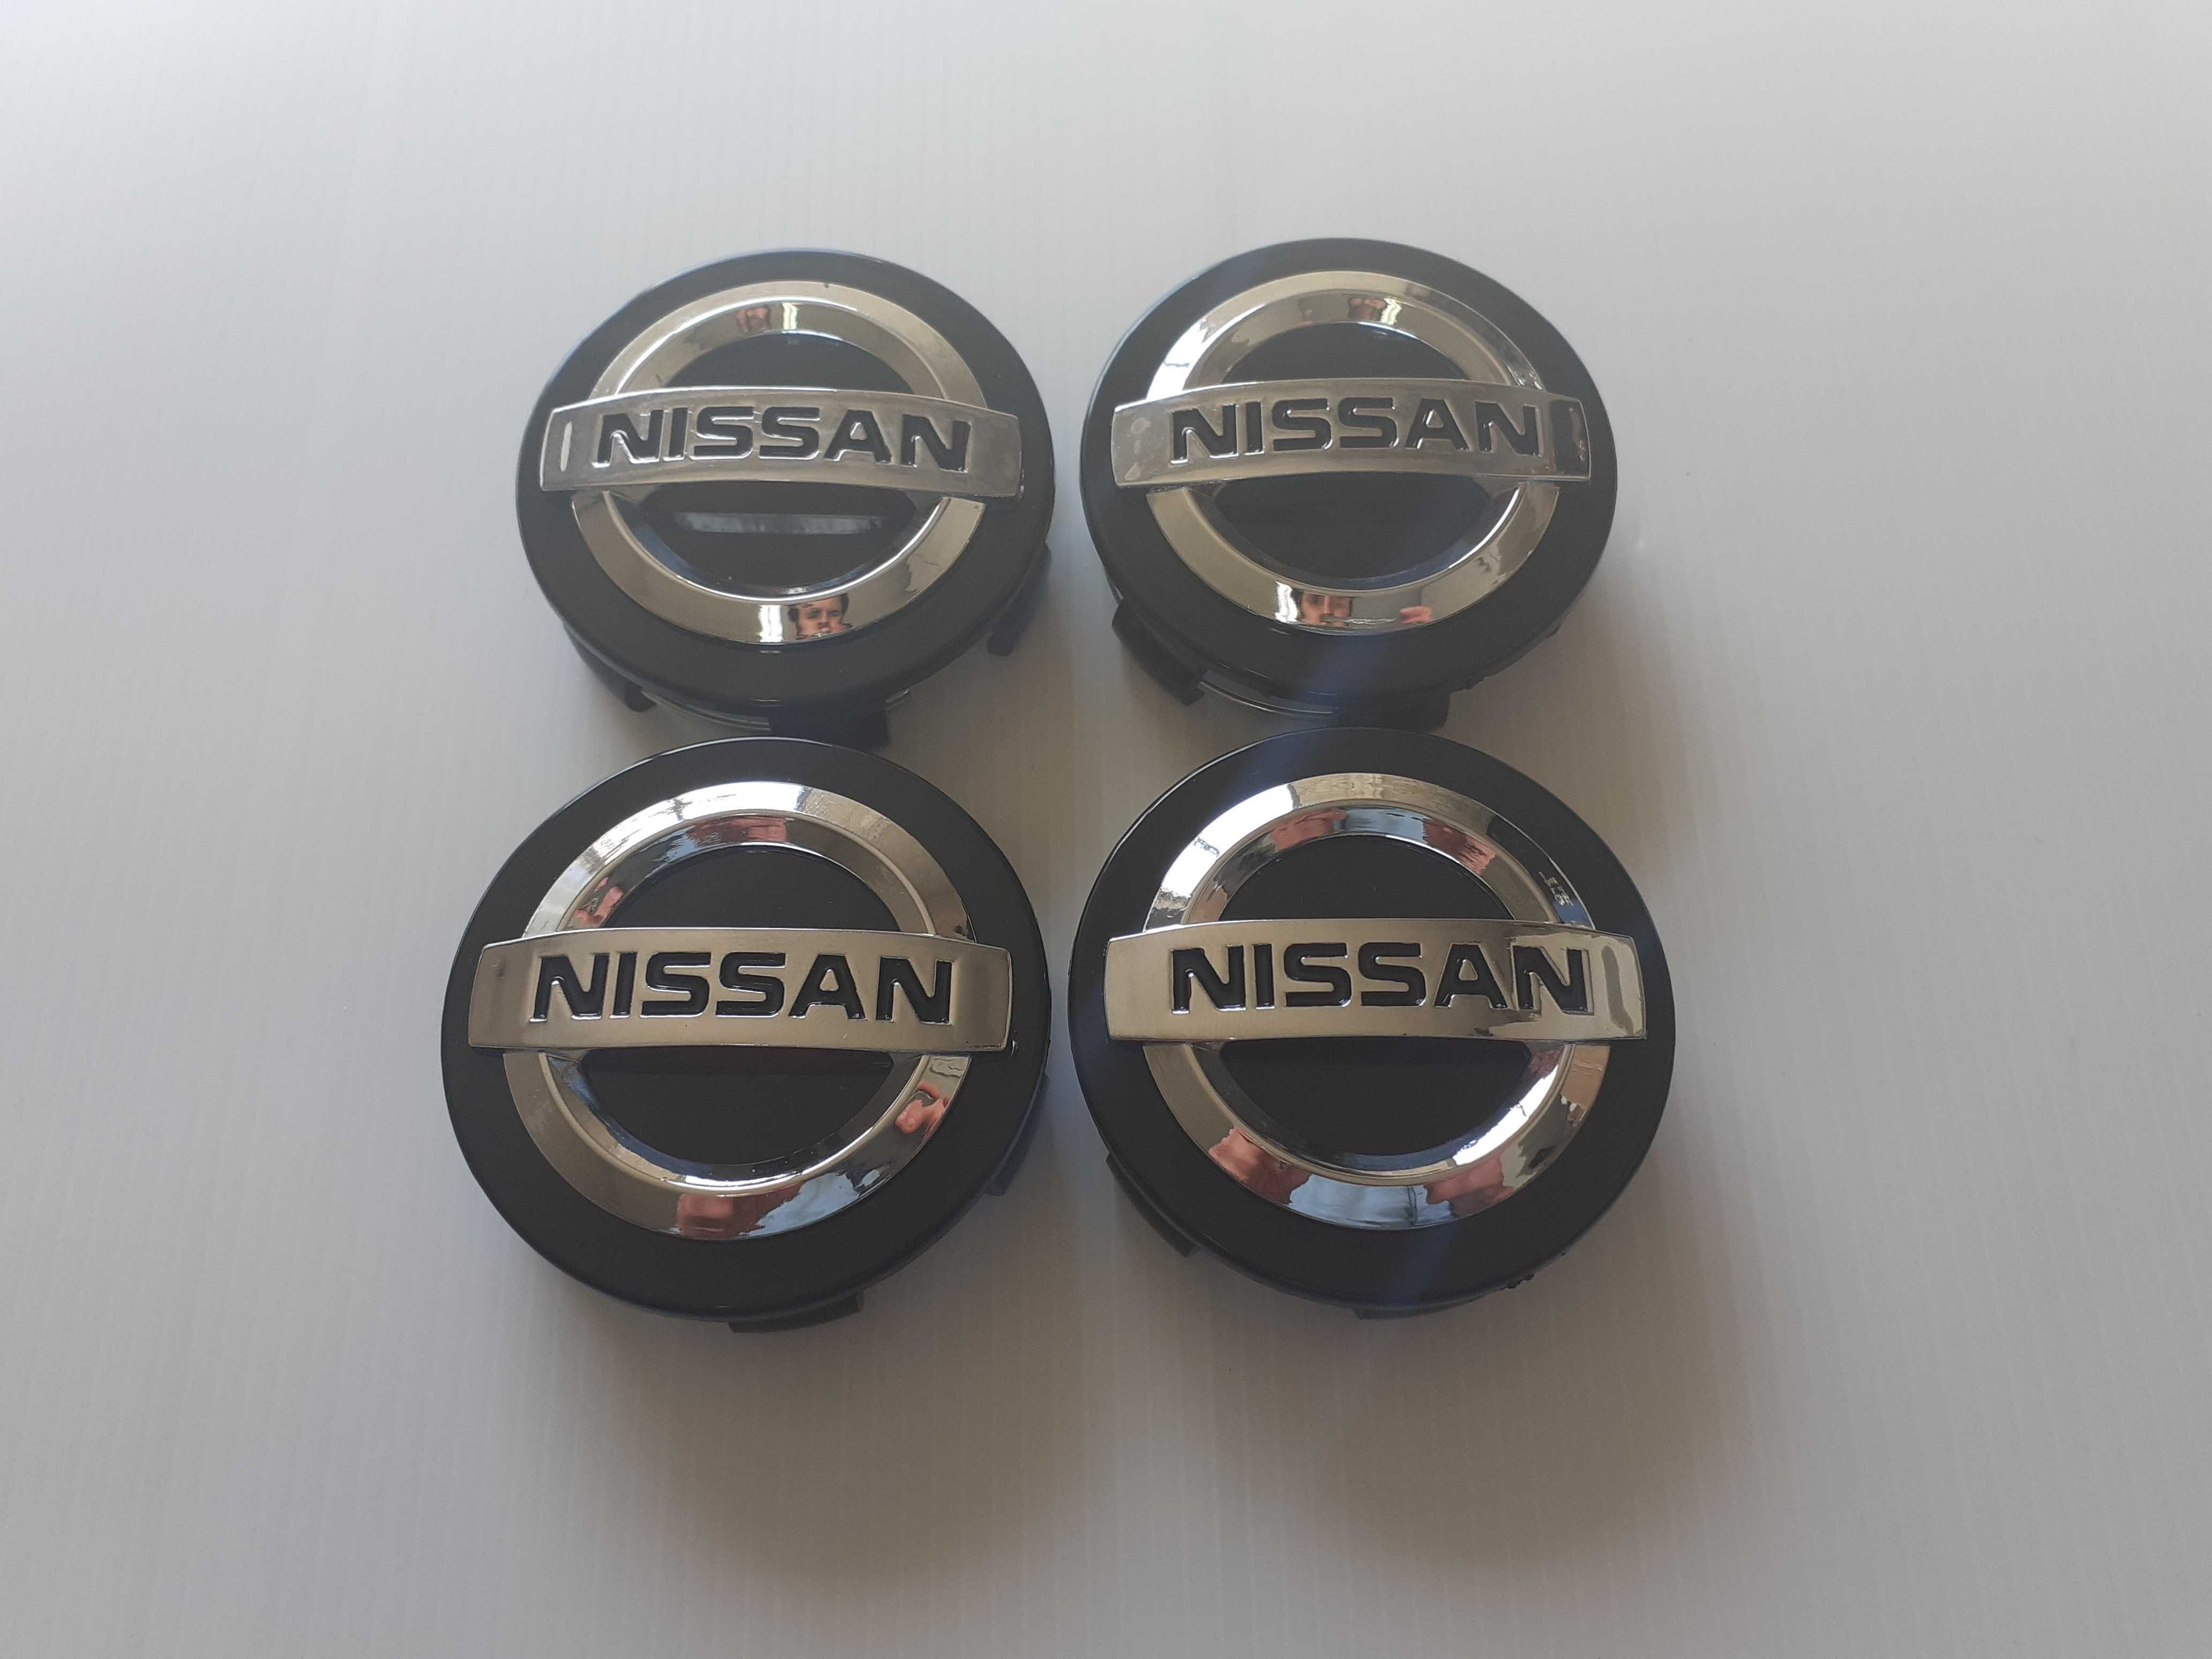 Centros/tampas de jante completos Nissan com 54, 58, 60, 65 e 68 mm